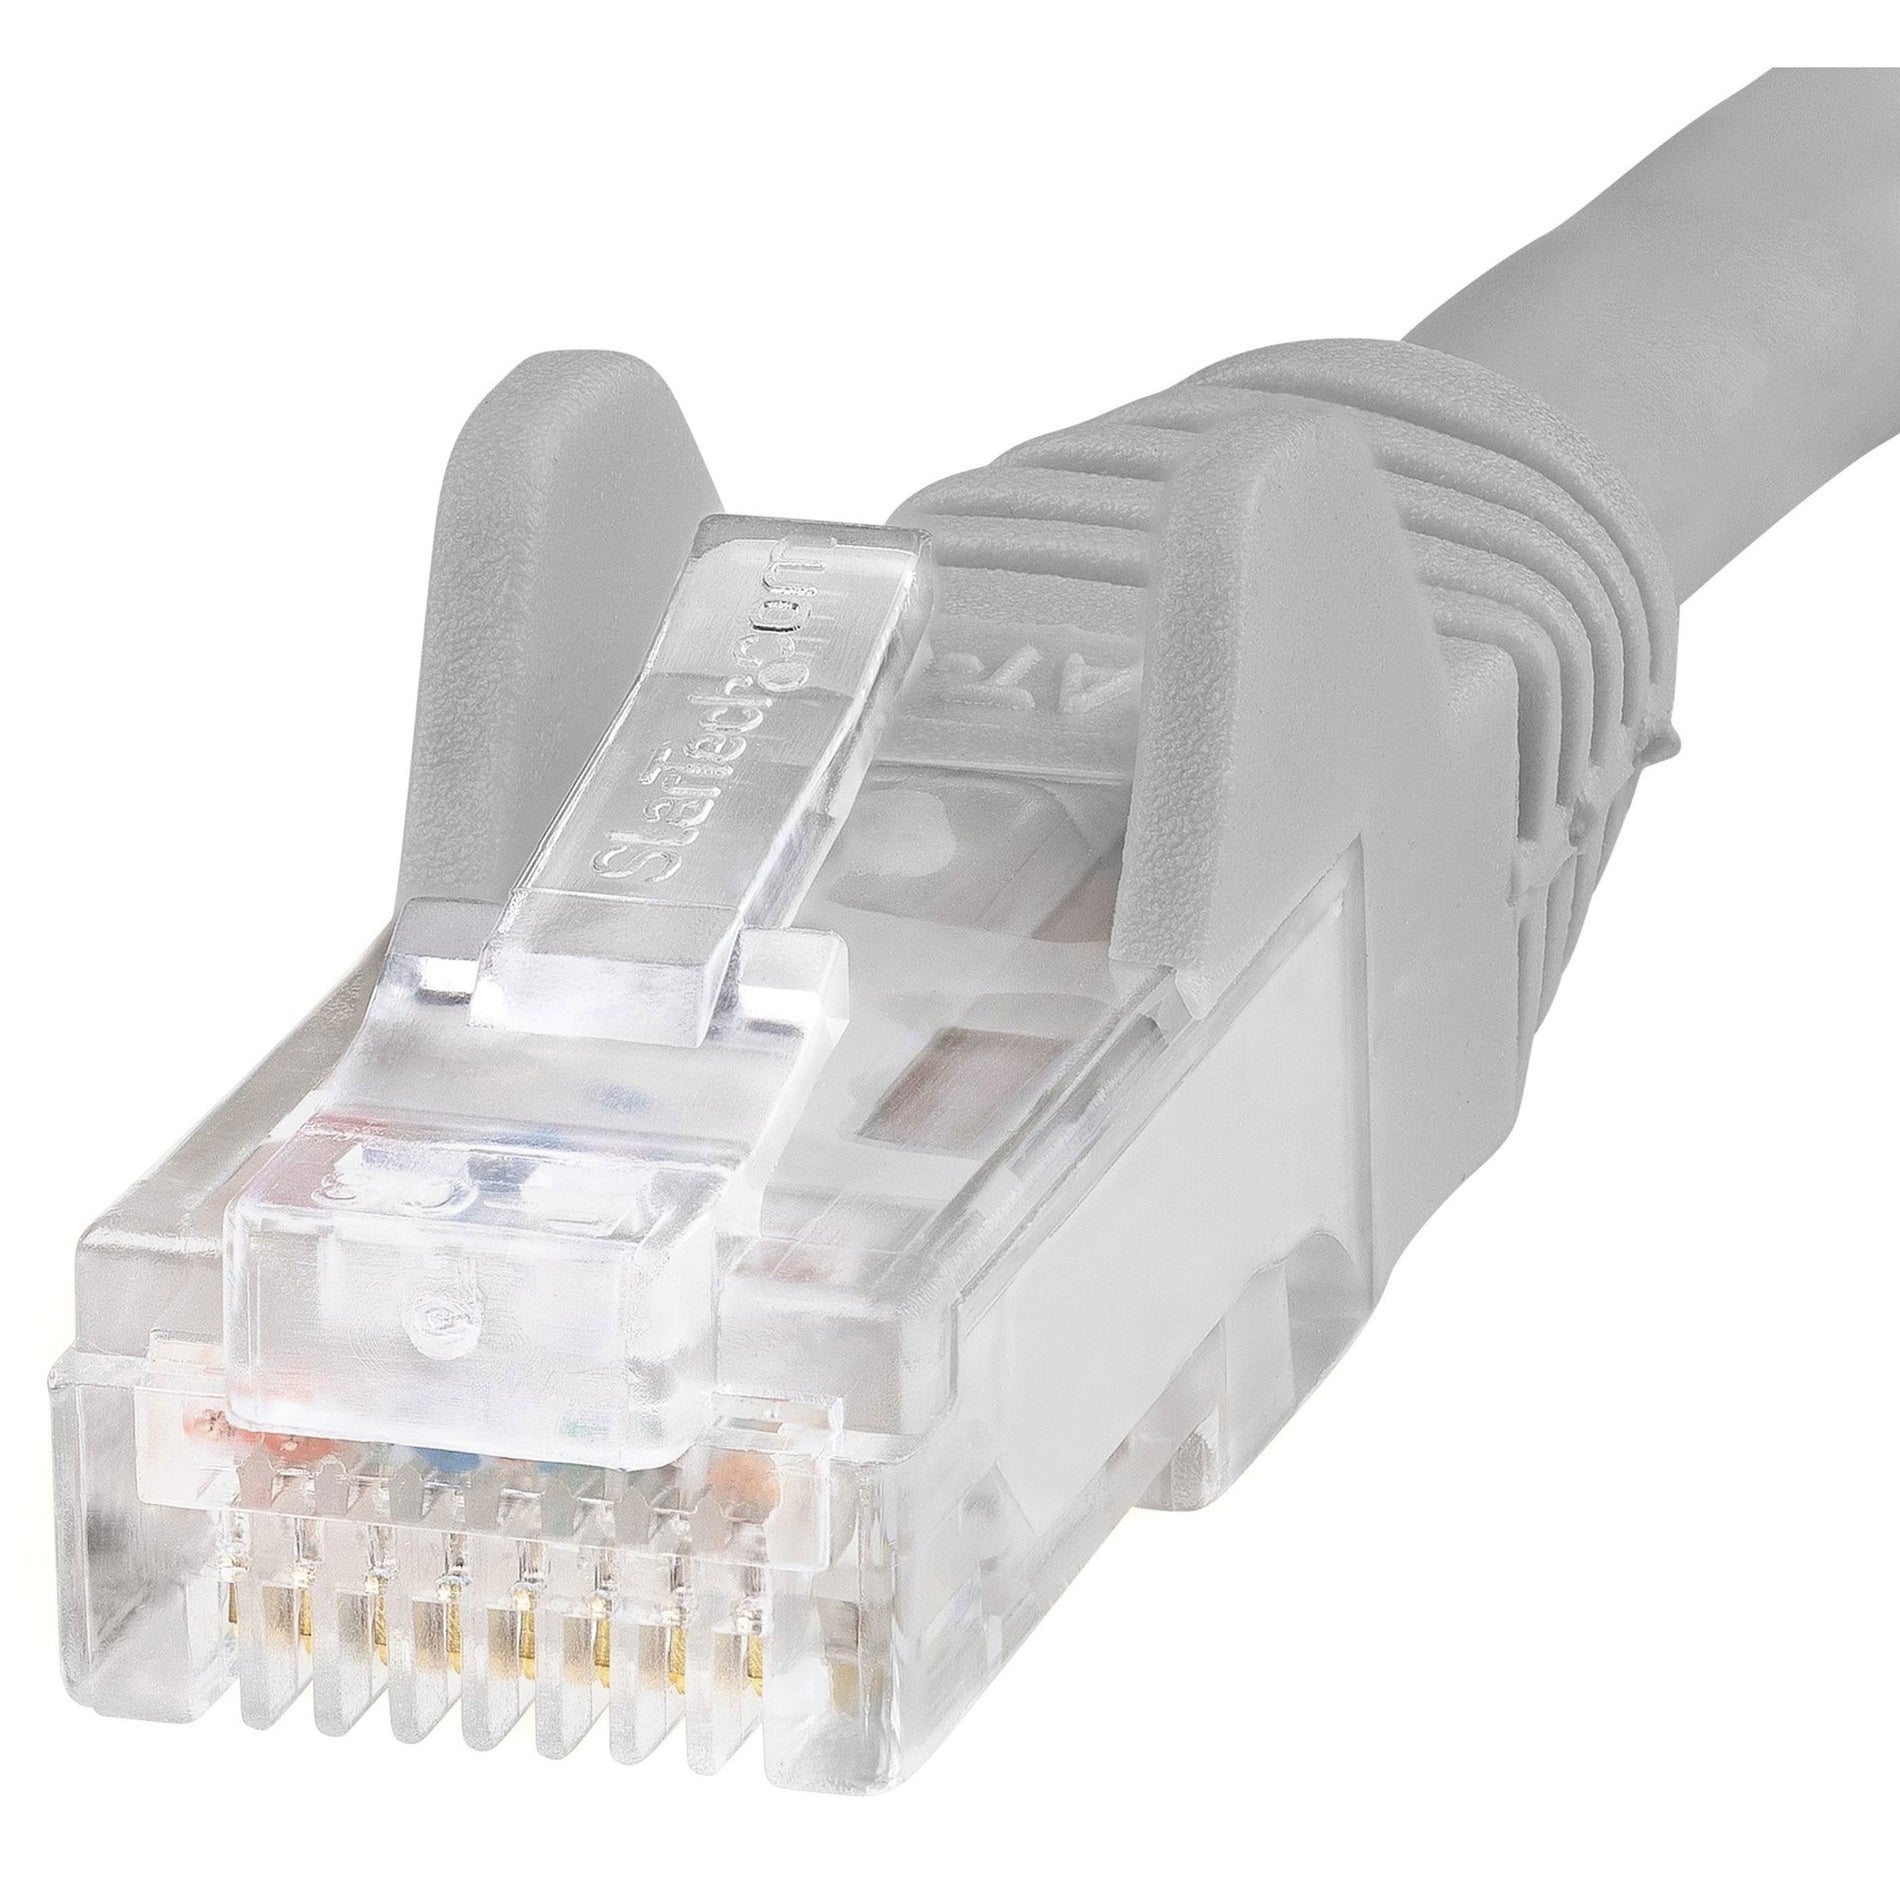 Cable de red StarTech.com N6PATCH2GR Cat6 cable Ethernet gris de 2 pies conectores RJ45 sin enganches.